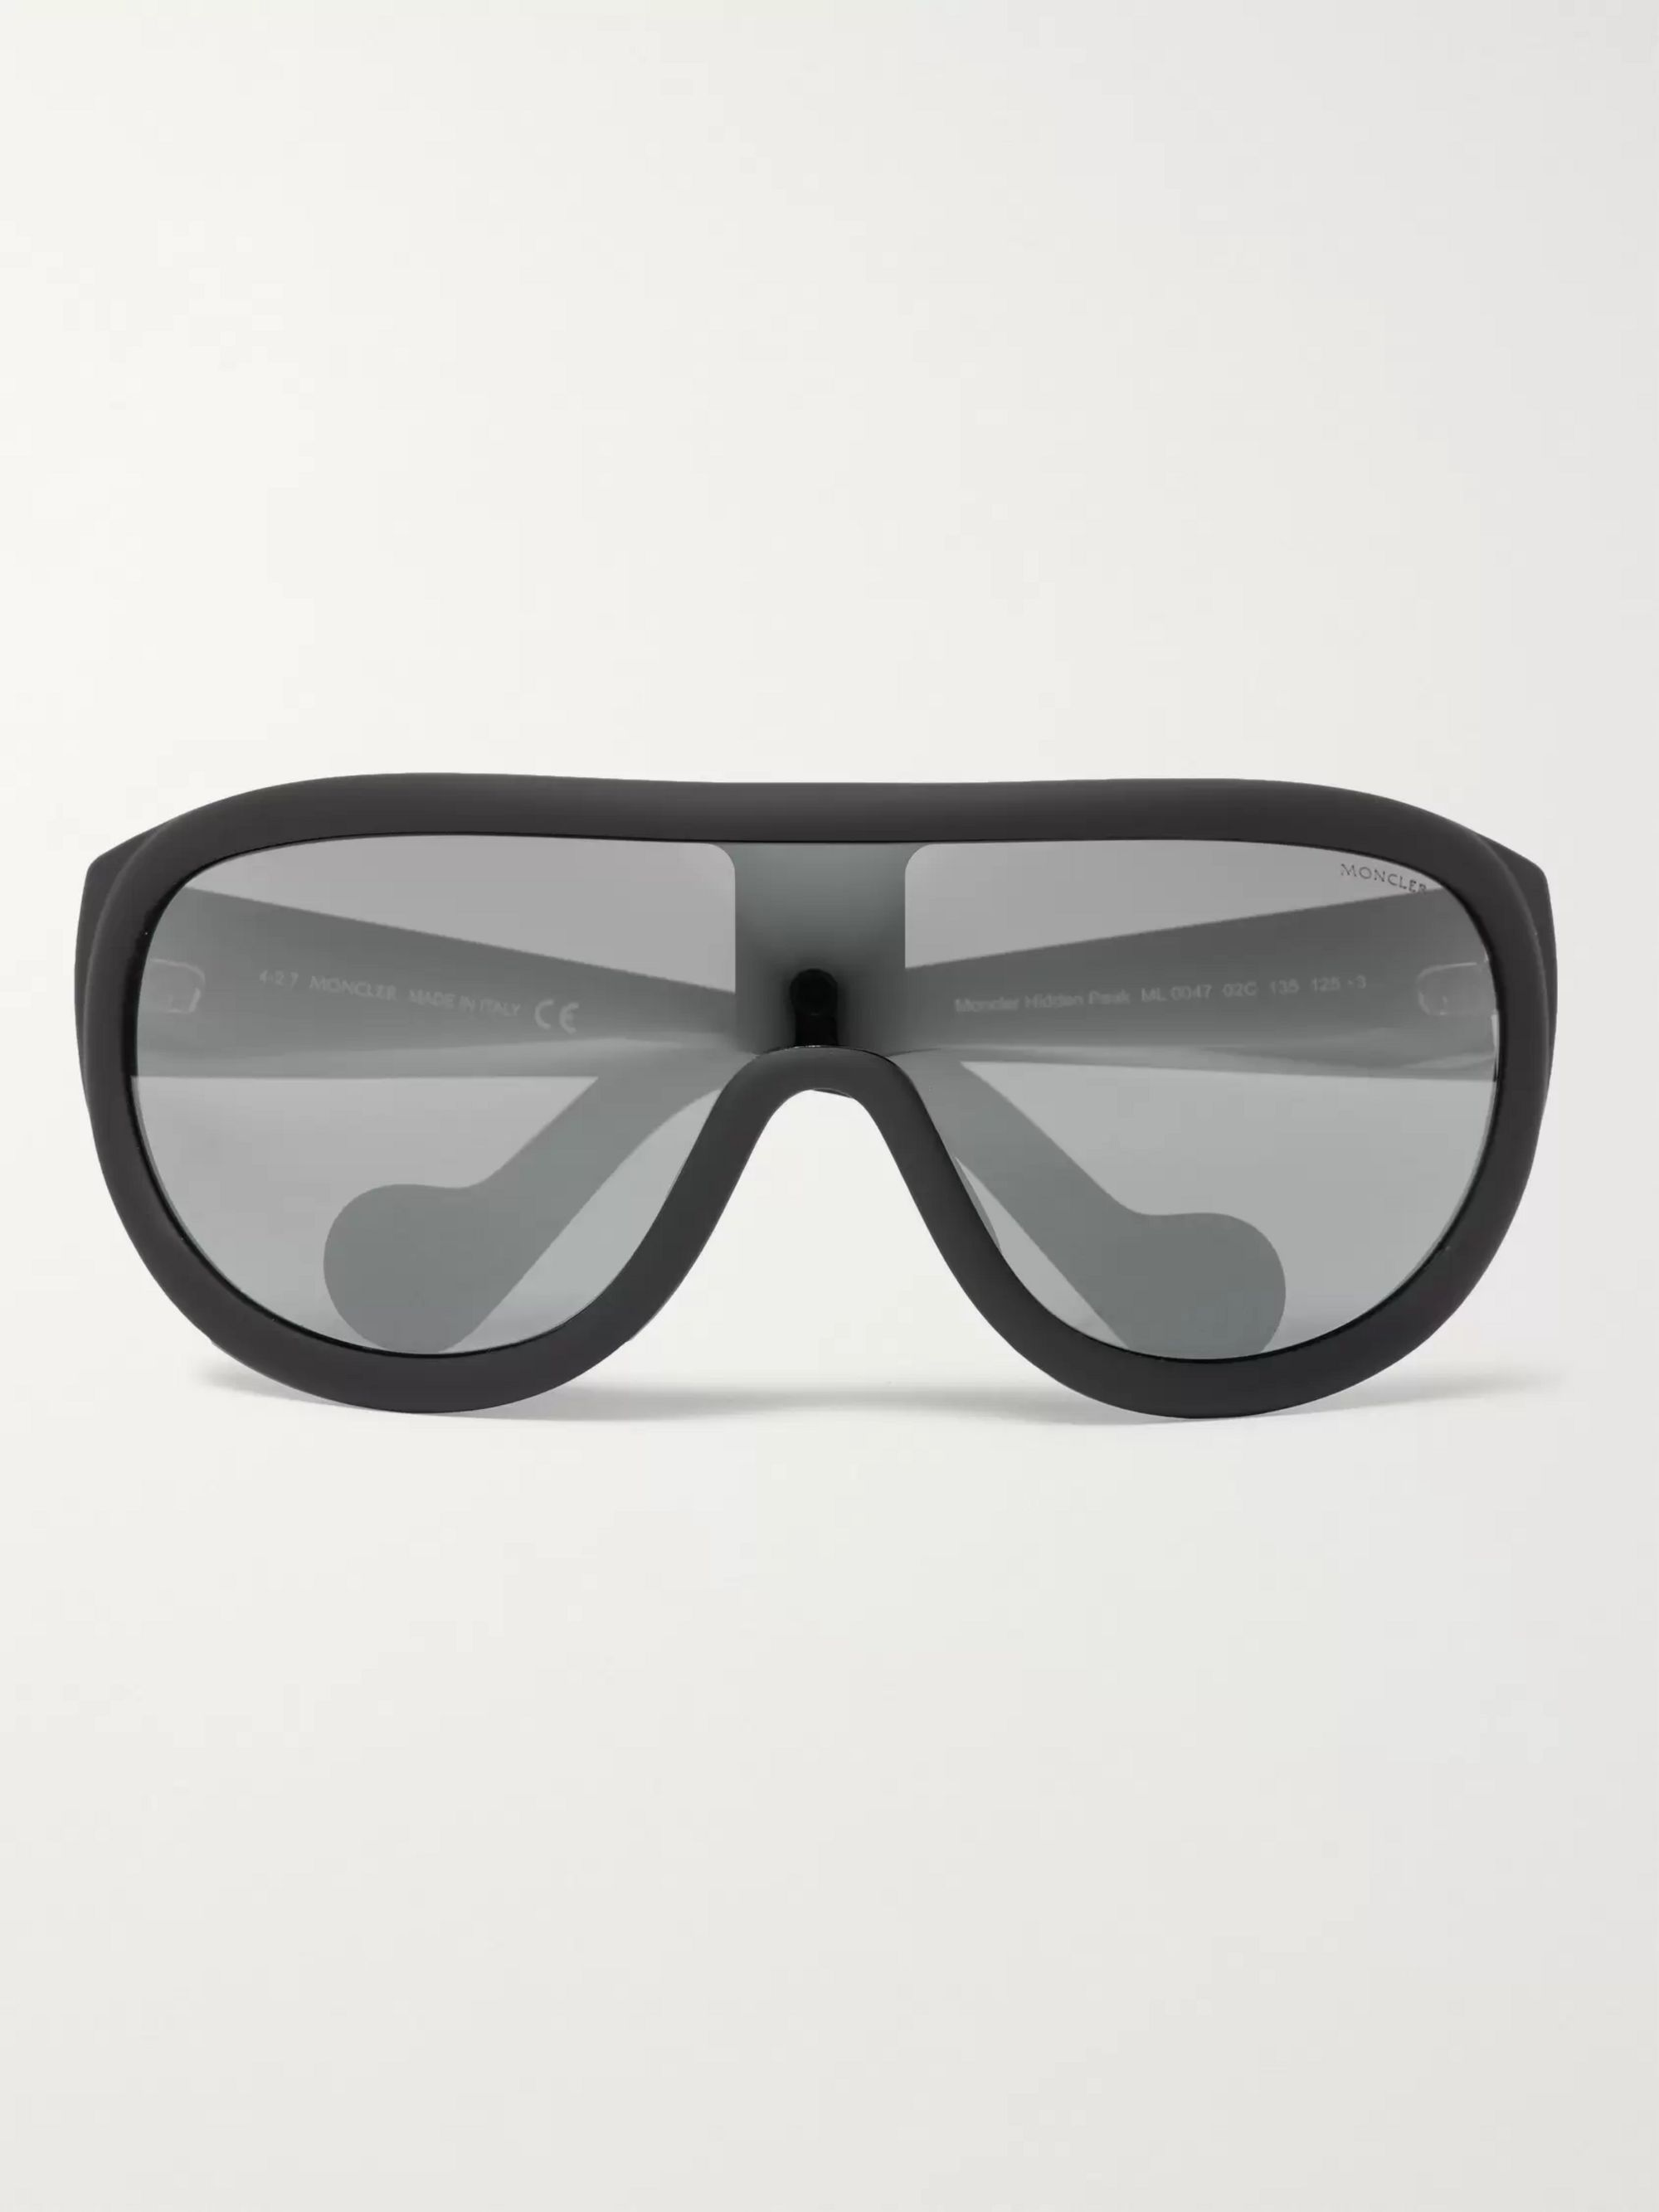 Black Acetate Ski Sunglasses | Moncler 